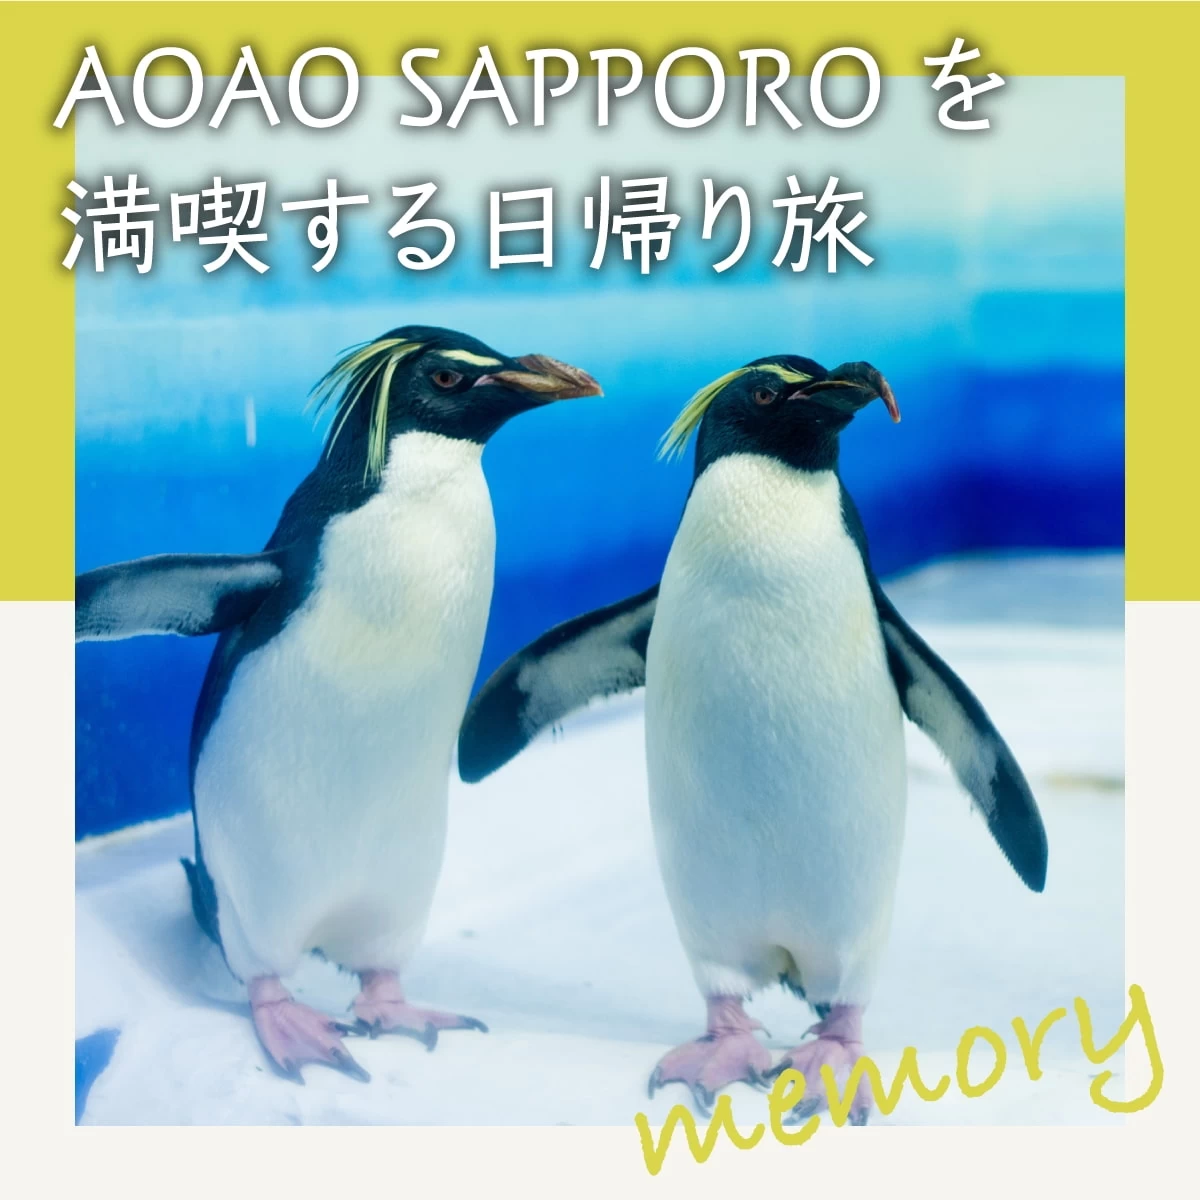 札幌の新名所・AOAO SAPPOROへ！グルメも食す女子旅